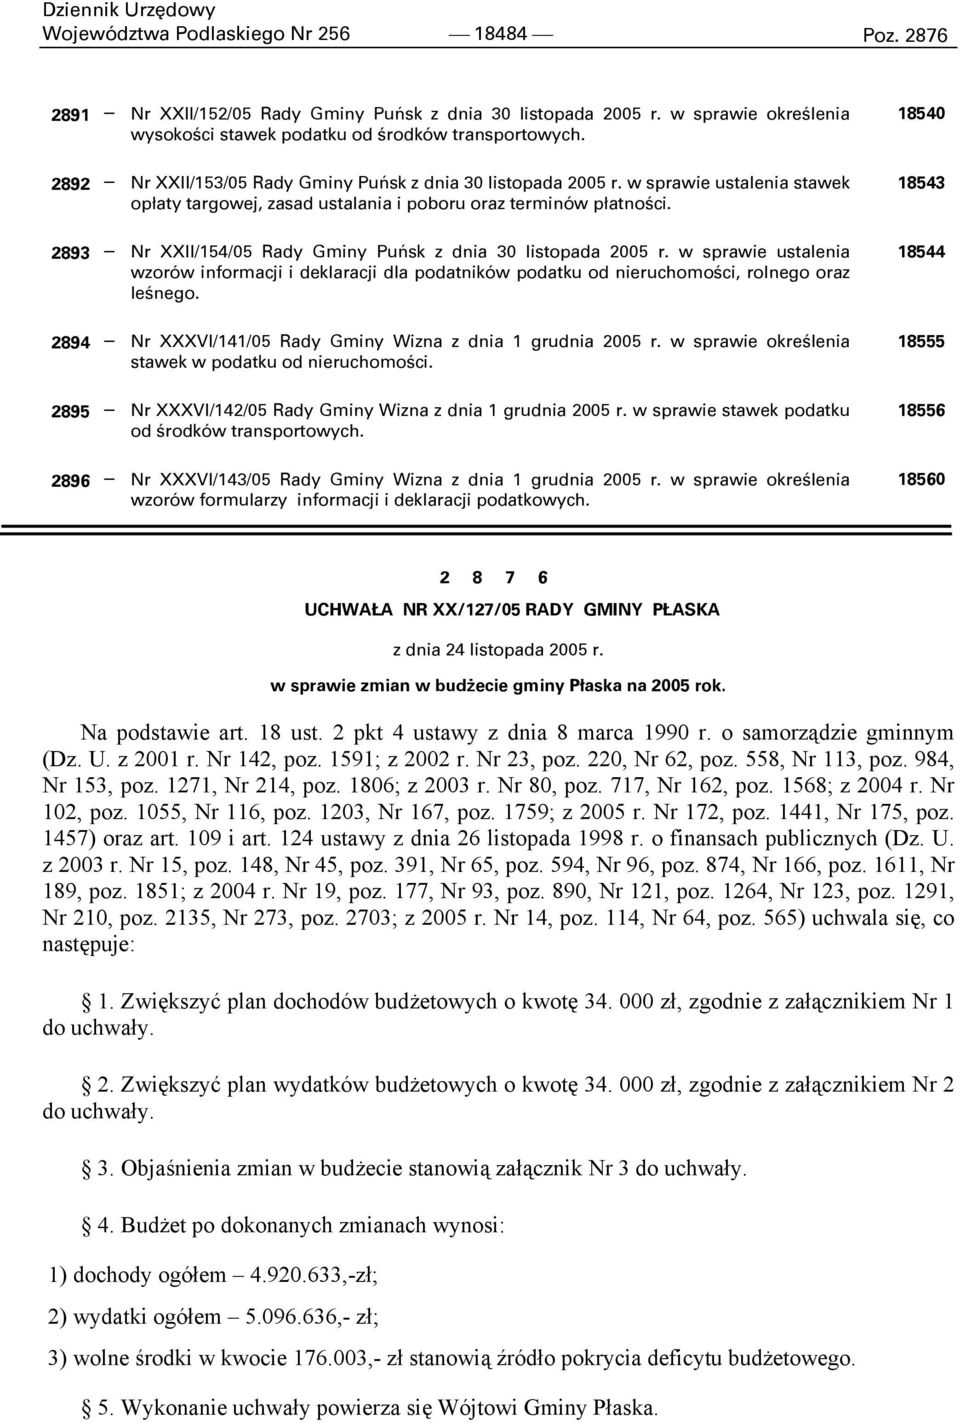 2893 Nr XXII/154/05 Rady Gminy Puńsk z dnia 30 listopada 2005 r. w sprawie ustalenia wzorów informacji i deklaracji dla podatników podatku od nieruchomości, rolnego oraz leśnego.